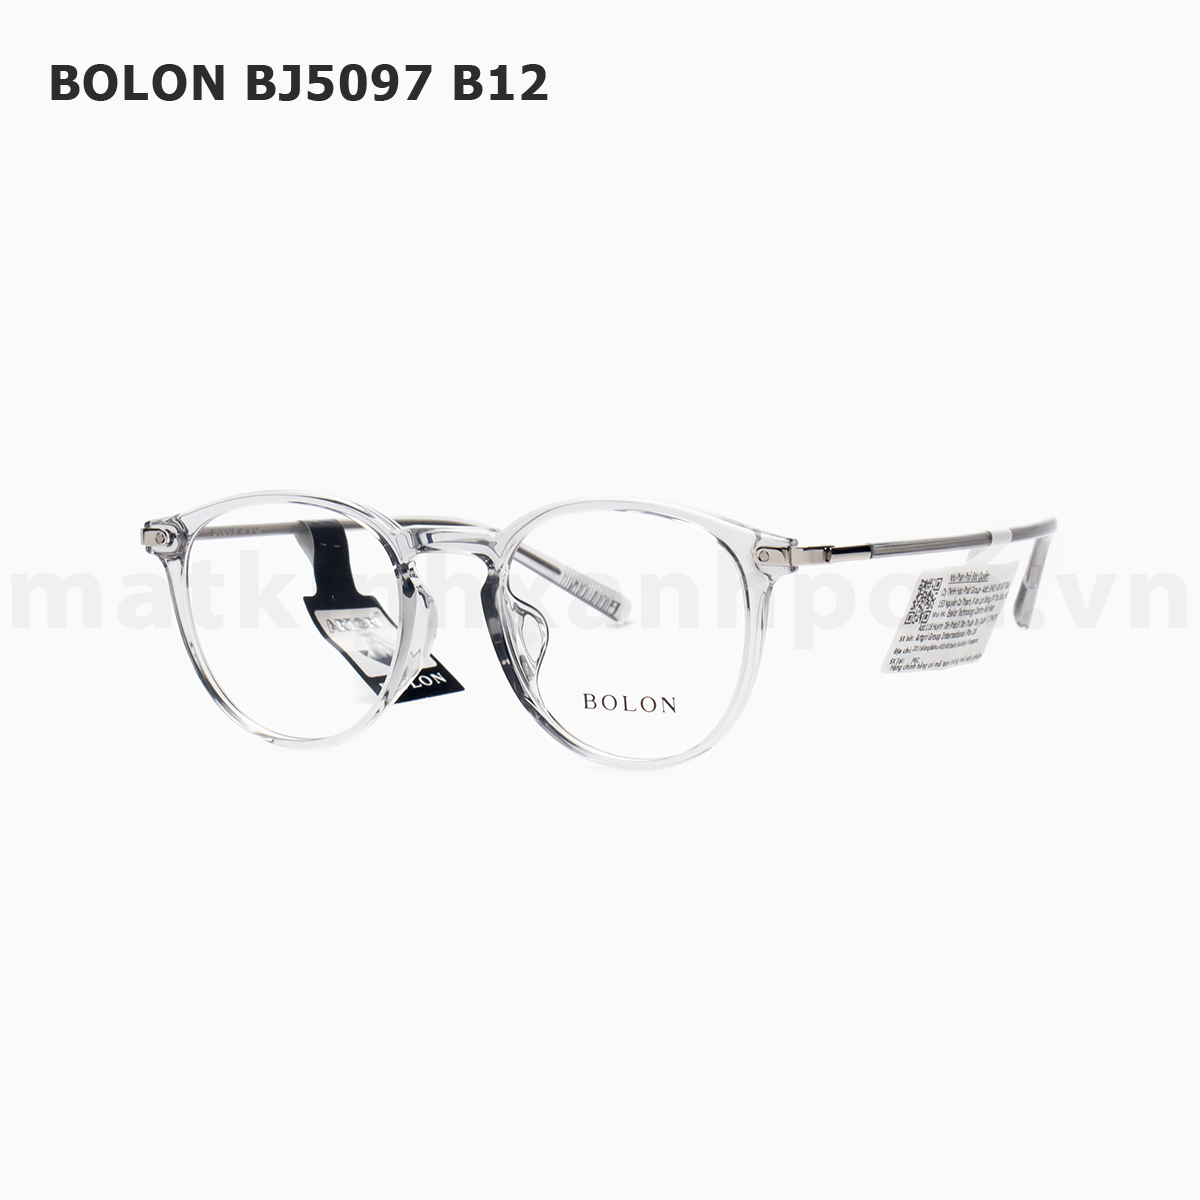 BOLON BJ5097 B12